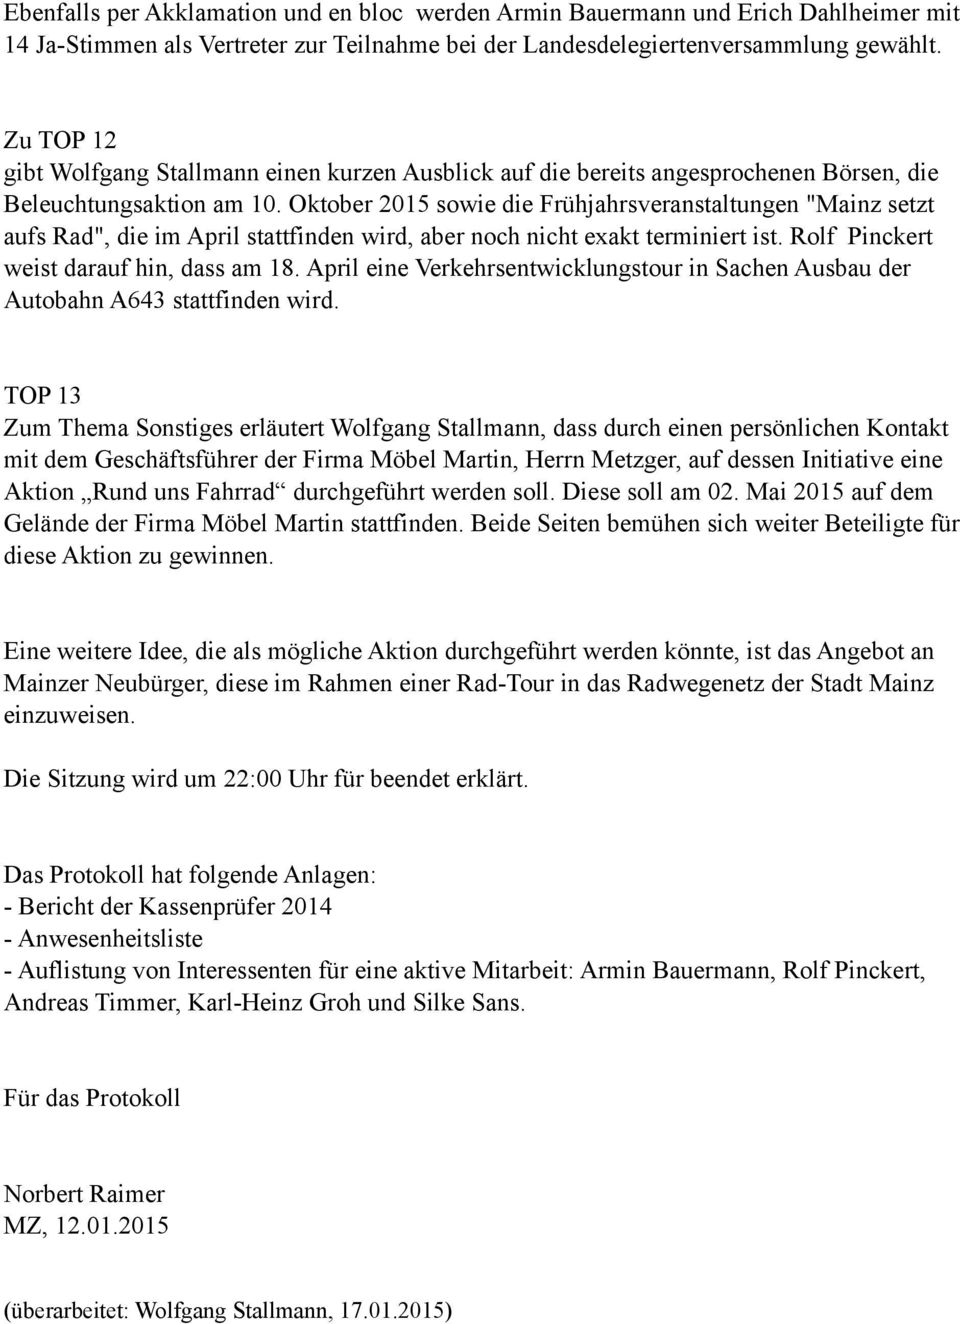 Oktober 2015 sowie die Frühjahrsveranstaltungen "Mainz setzt aufs Rad", die im April stattfinden wird, aber noch nicht exakt terminiert ist. Rolf Pinckert weist darauf hin, dass am 18.